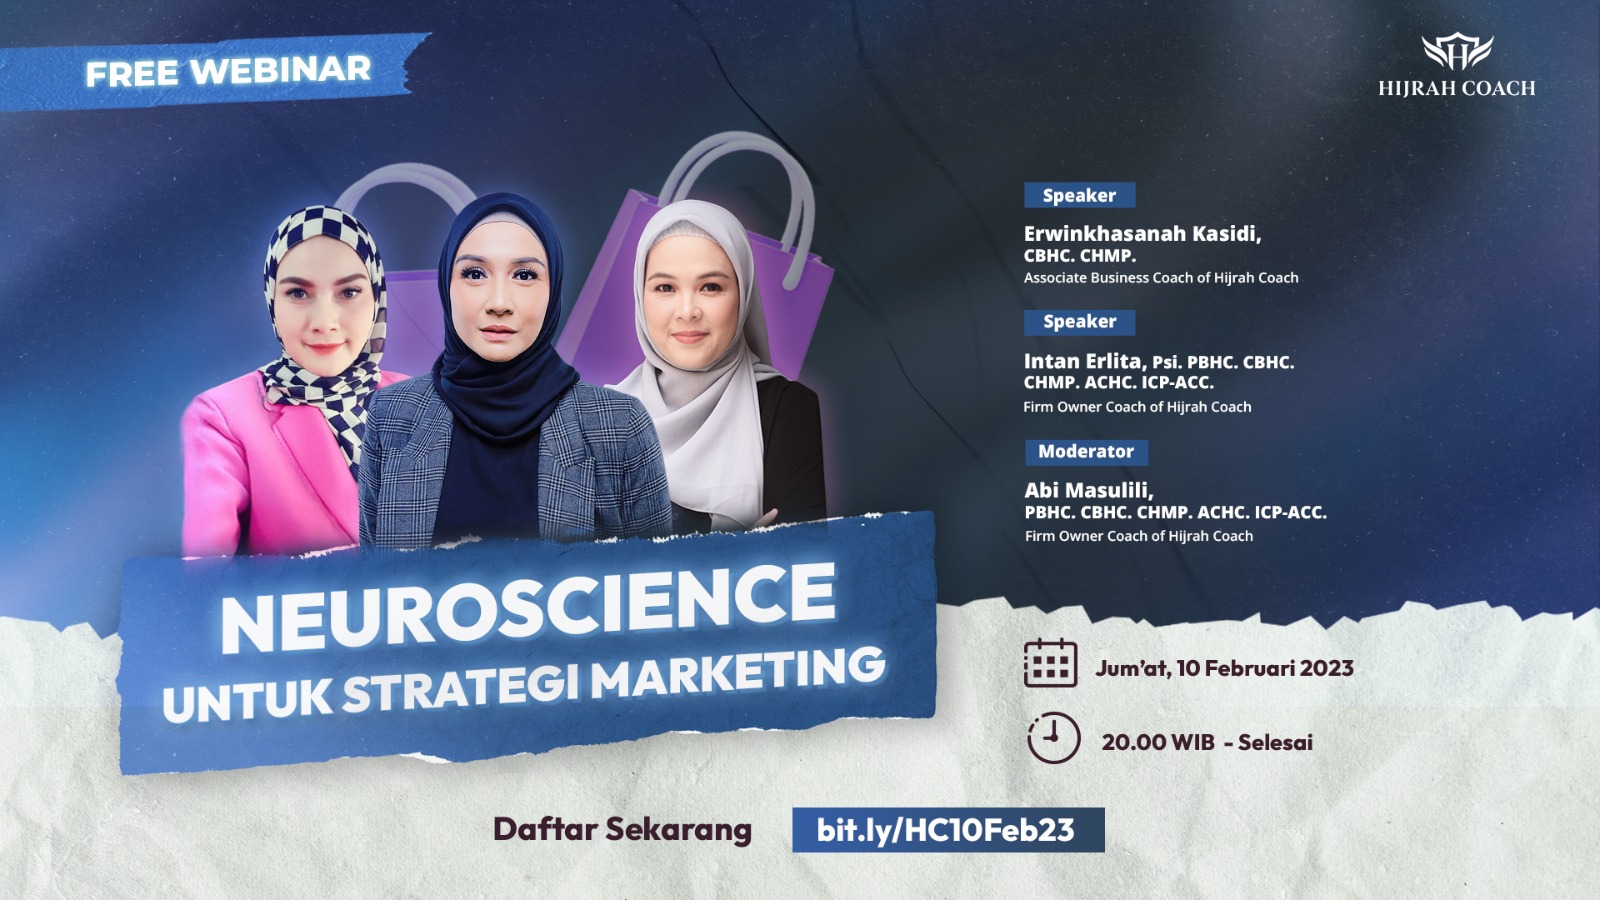 [Free Webinar] Neuroscience untuk Strategi Marketing